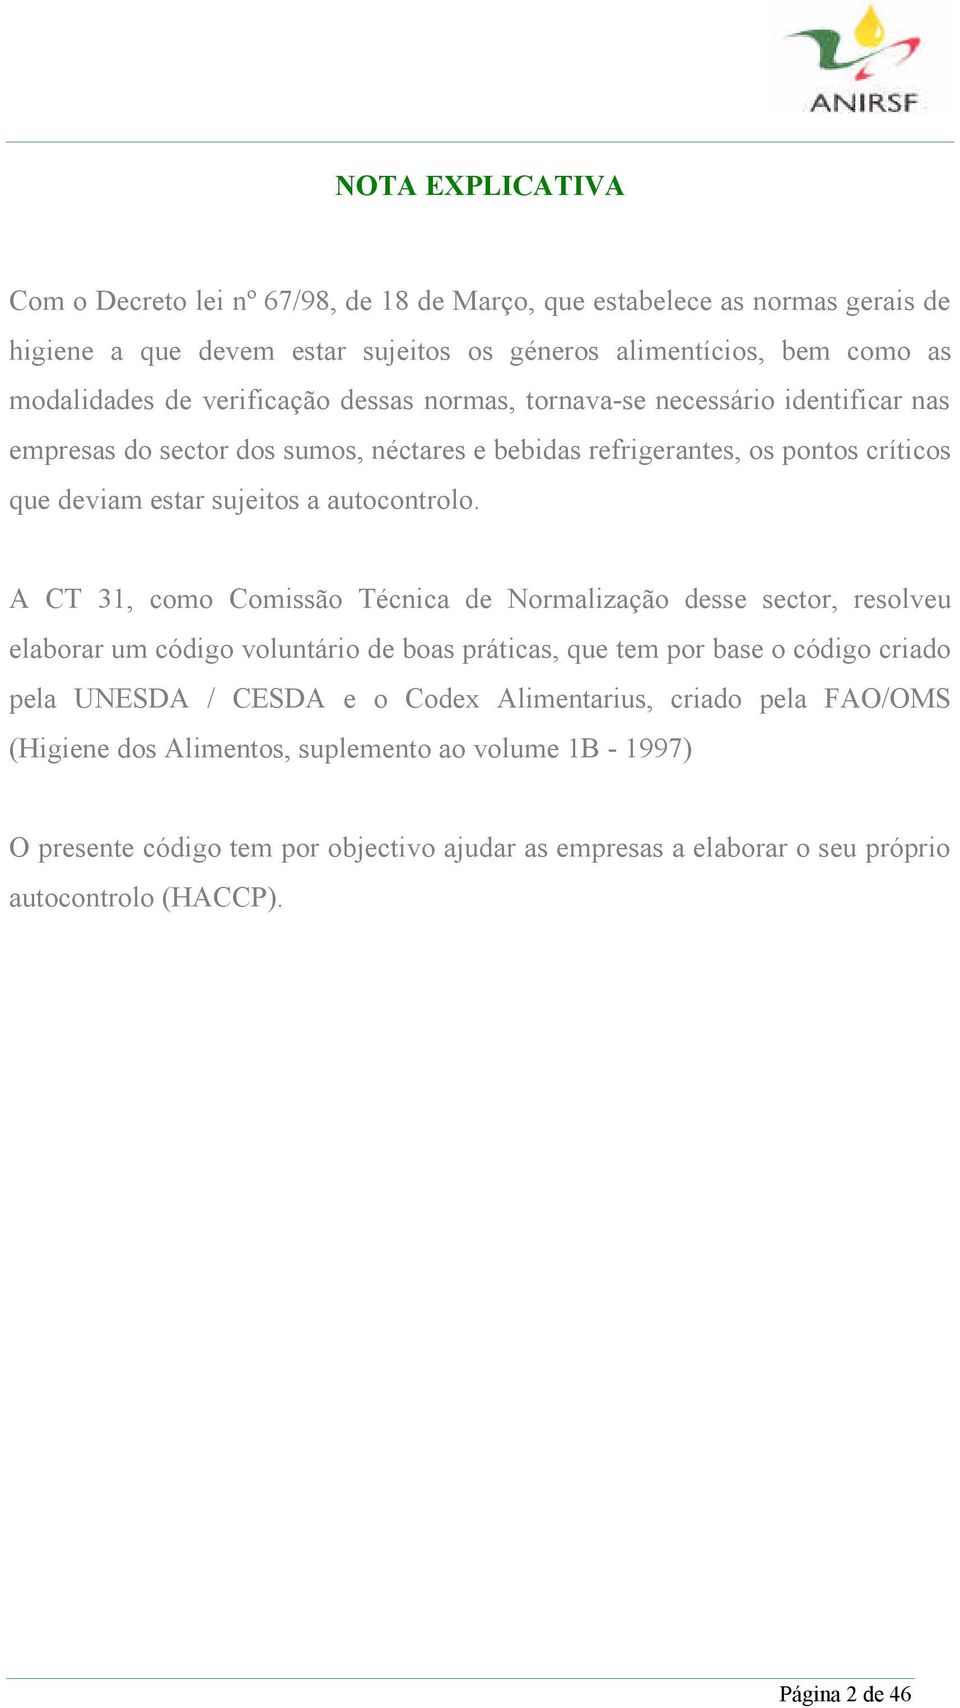 A CT 31, como Comissão Técnica de Normalização desse sector, resolveu elaborar um código voluntário de boas práticas, que tem por base o código criado pela UNESDA / CESDA e o Codex